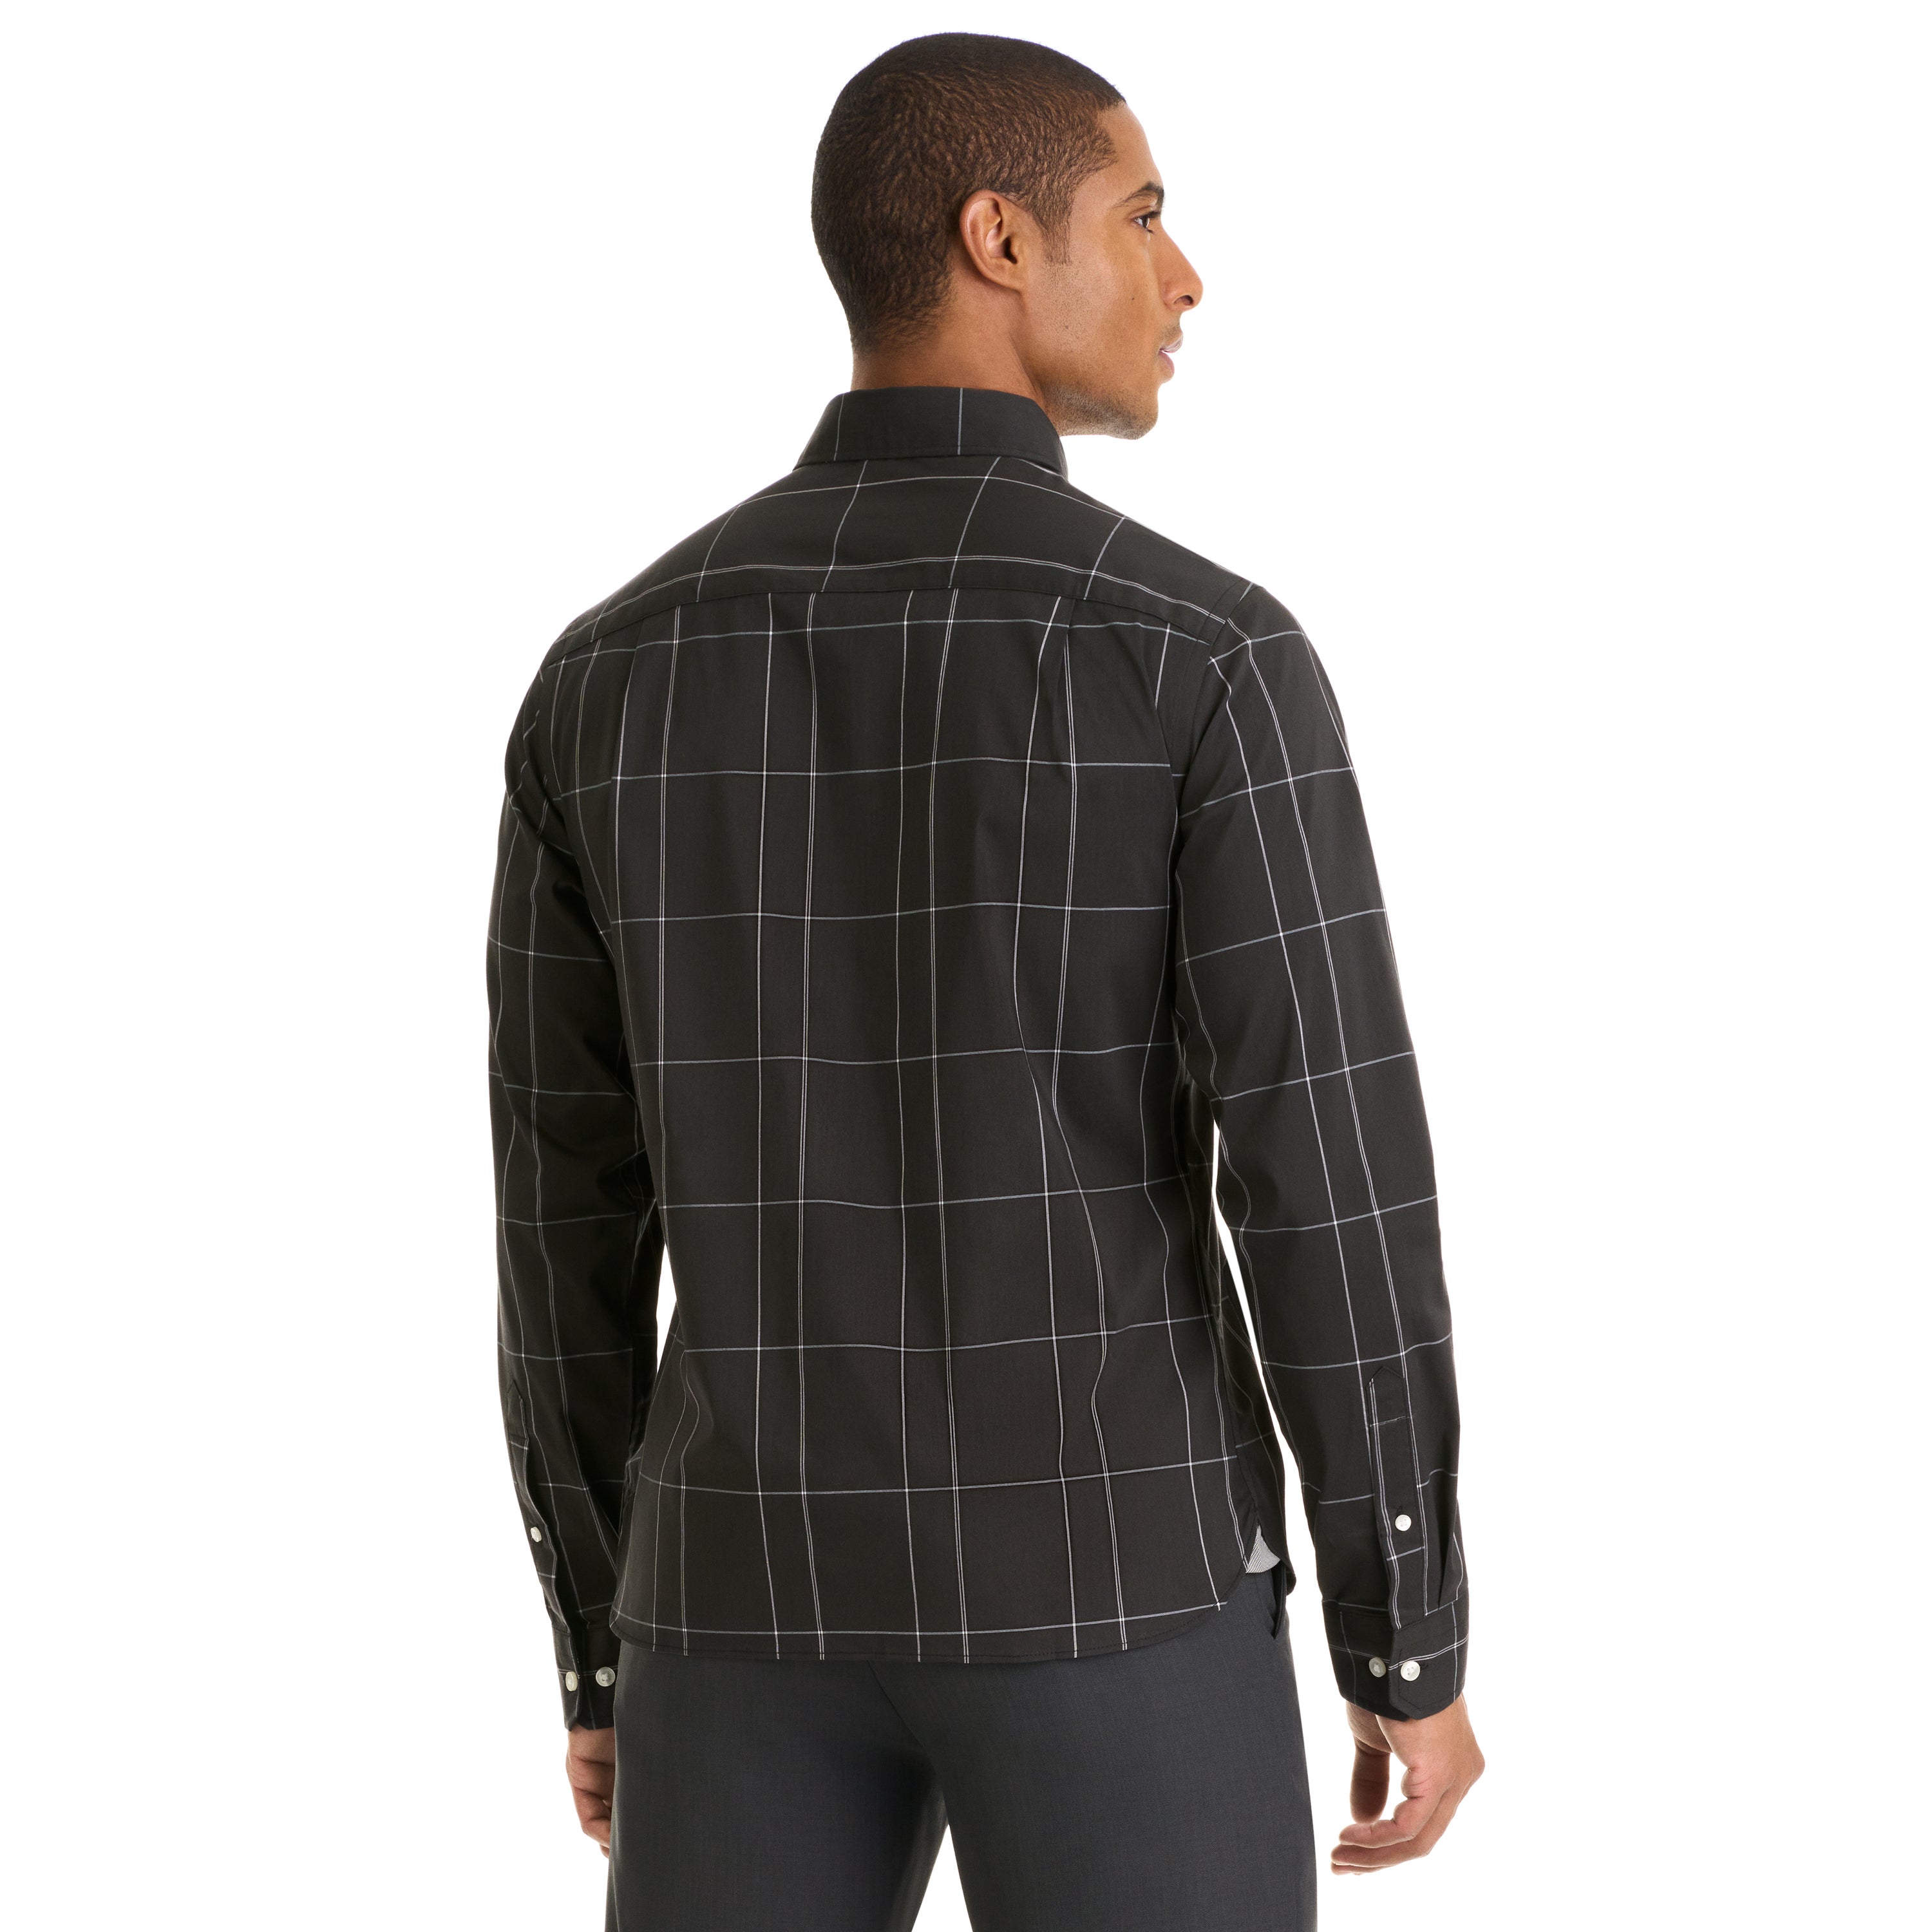 Essential Stain Shield Shirt Long Sleeve Wovens Minimal Plaid Print - Slim Fit